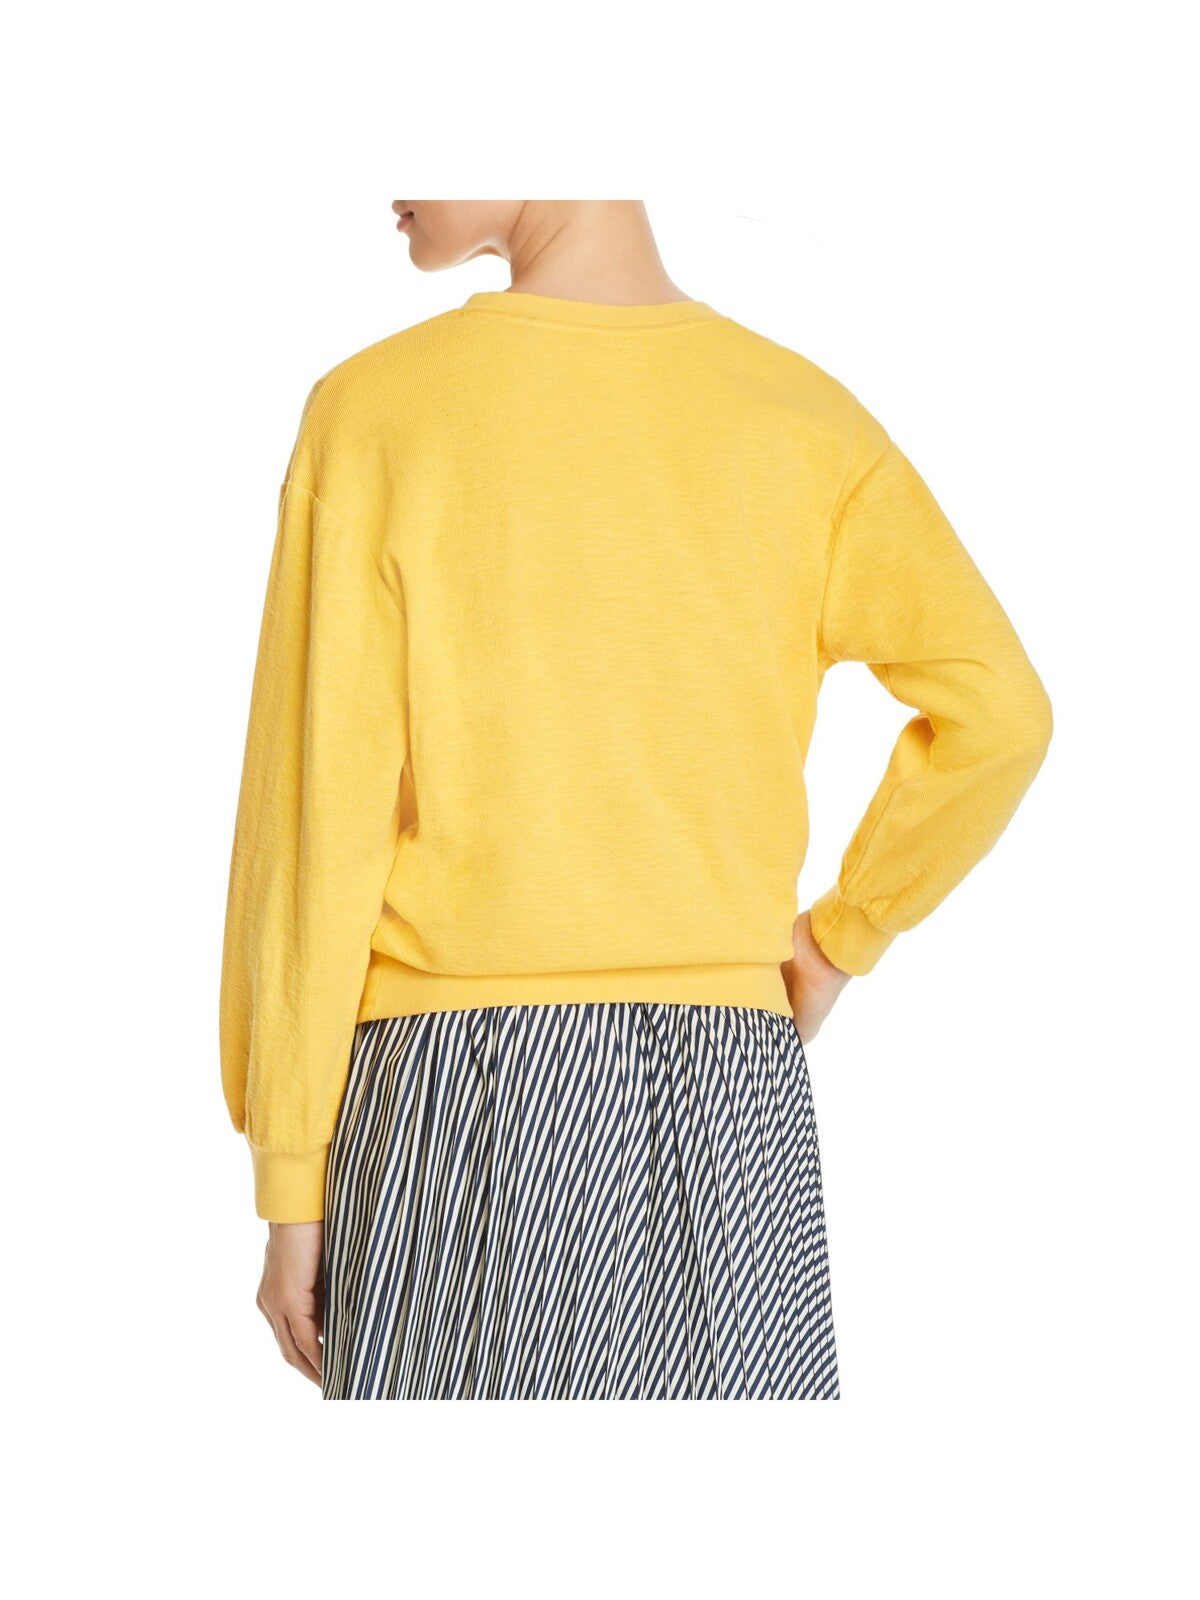 MKT STUDIO Womens Yellow Textured Rib-knit Trim Graphic Sweatshirt XS